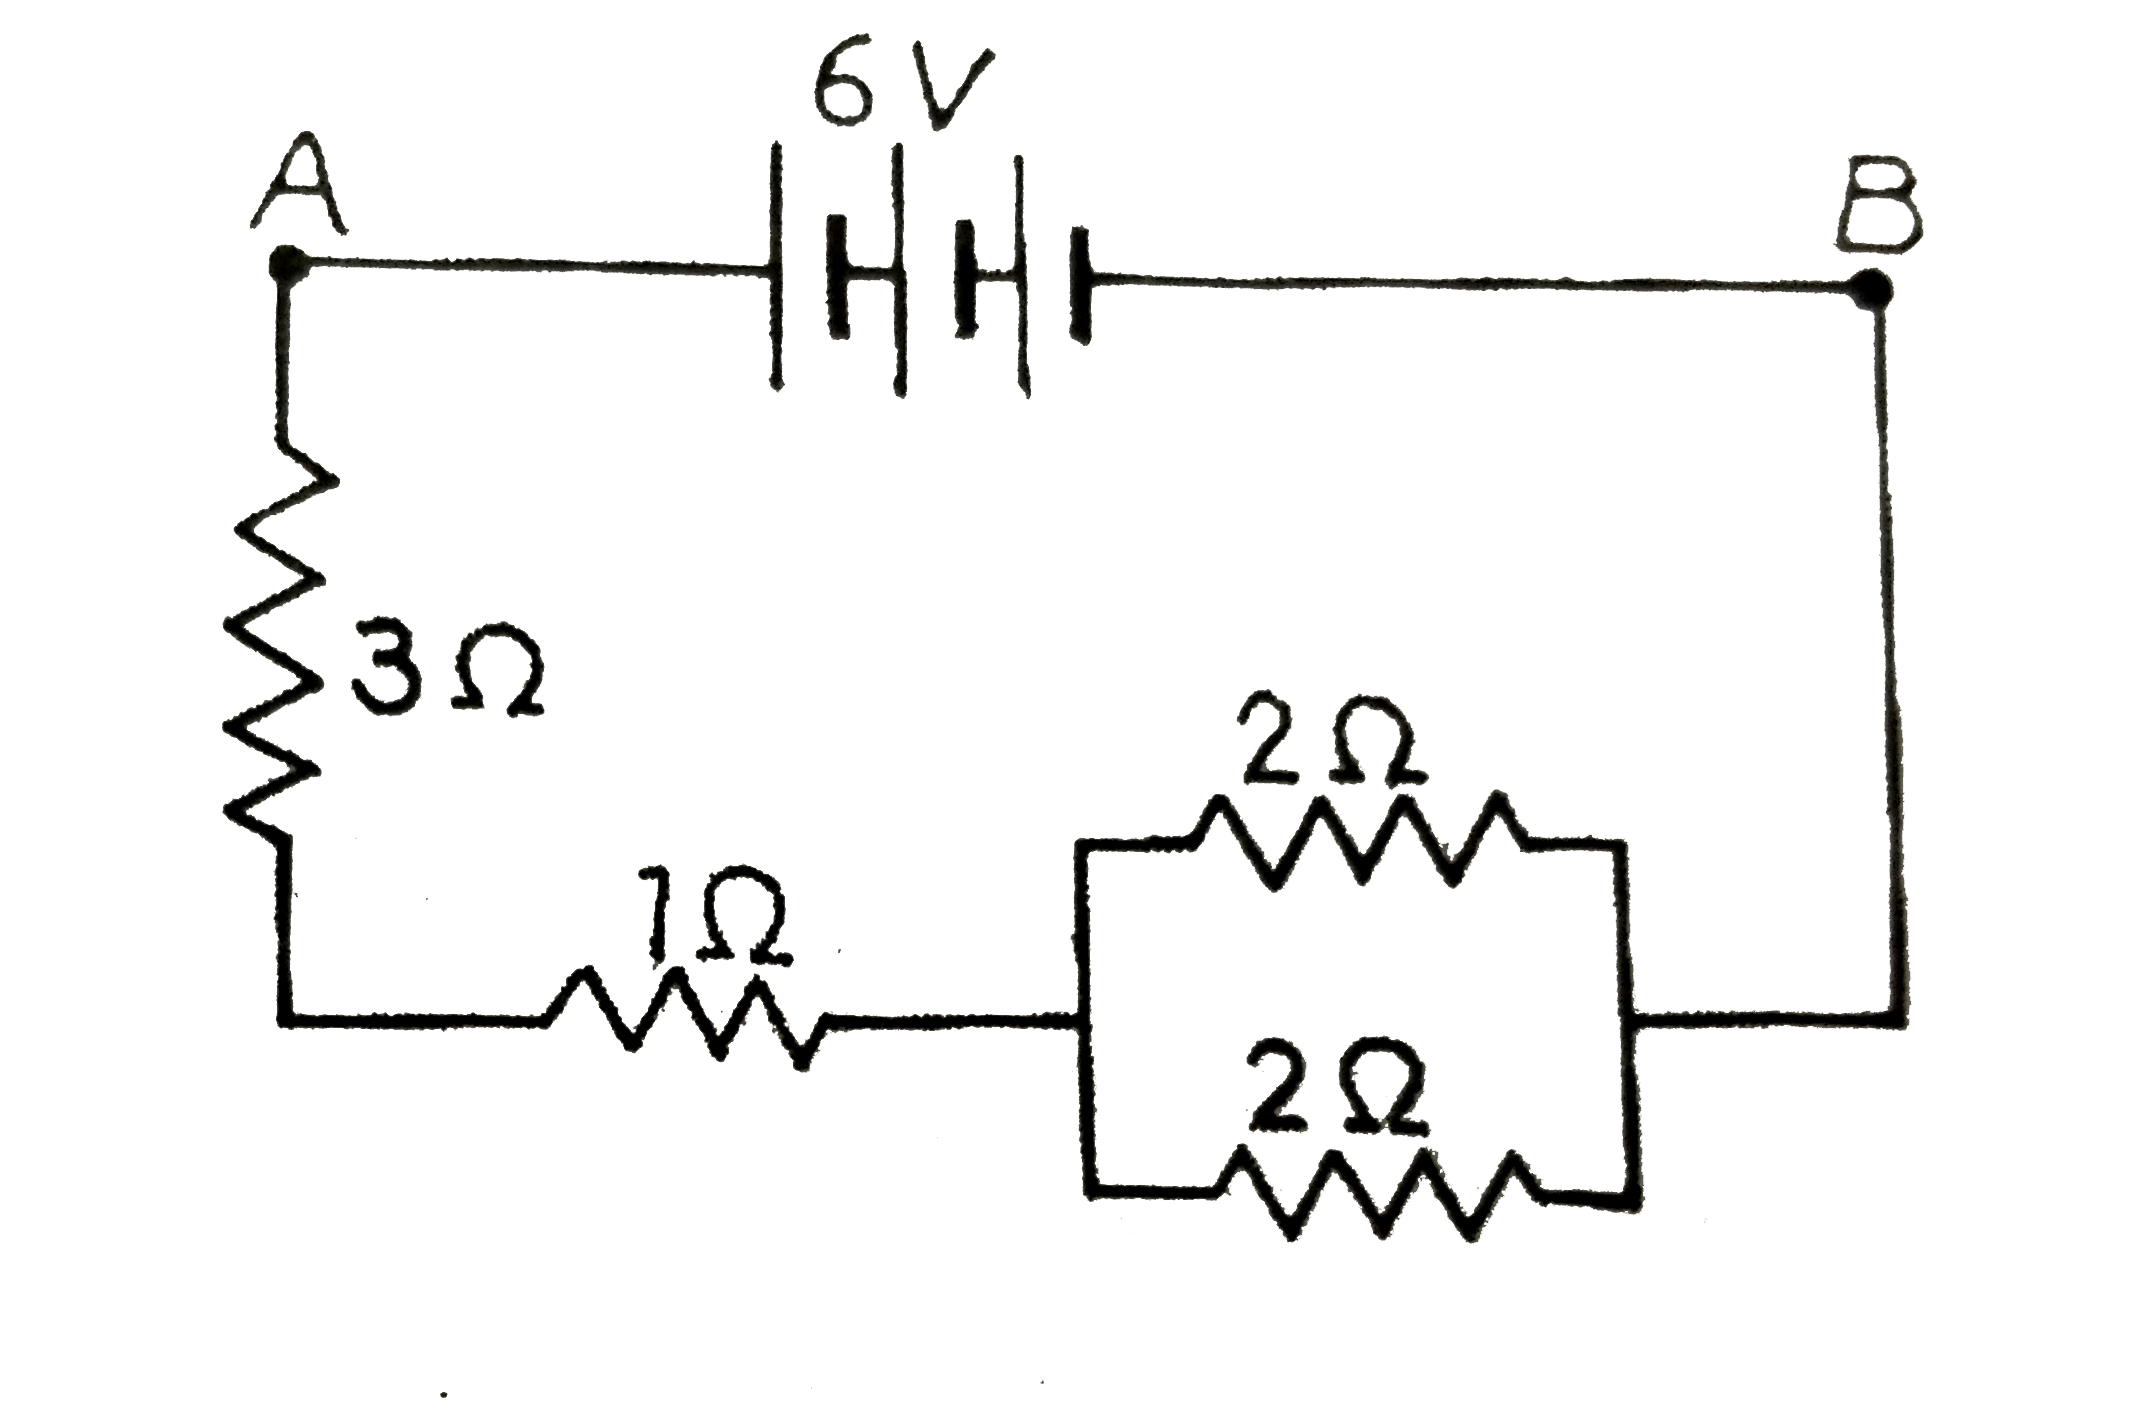 संलग्न  परिपथ  में ज्ञात  कीजिये  -  (i ) A तथा B  बिन्दुओ में मध्य  तुल्य  - प्रतिरोध  (ii )  परिपथ   में धारा ,(iii )  3  Omega    के प्रतिरोध  के सिरों  पर  विभवान्तर  ।